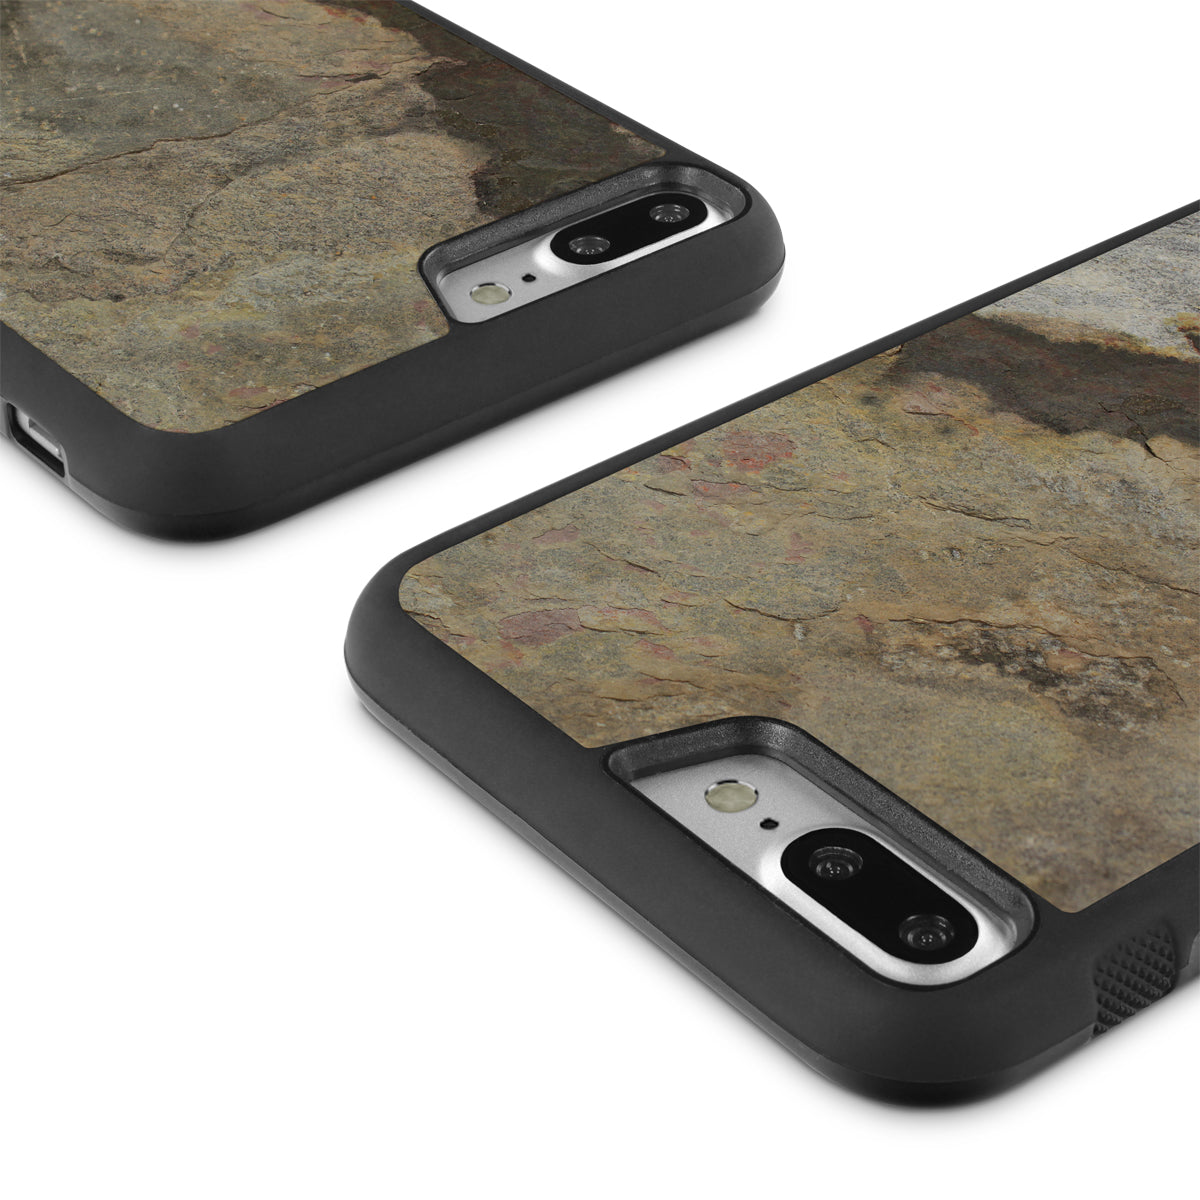 iPhone 7 Plus —  Stone Explorer Case